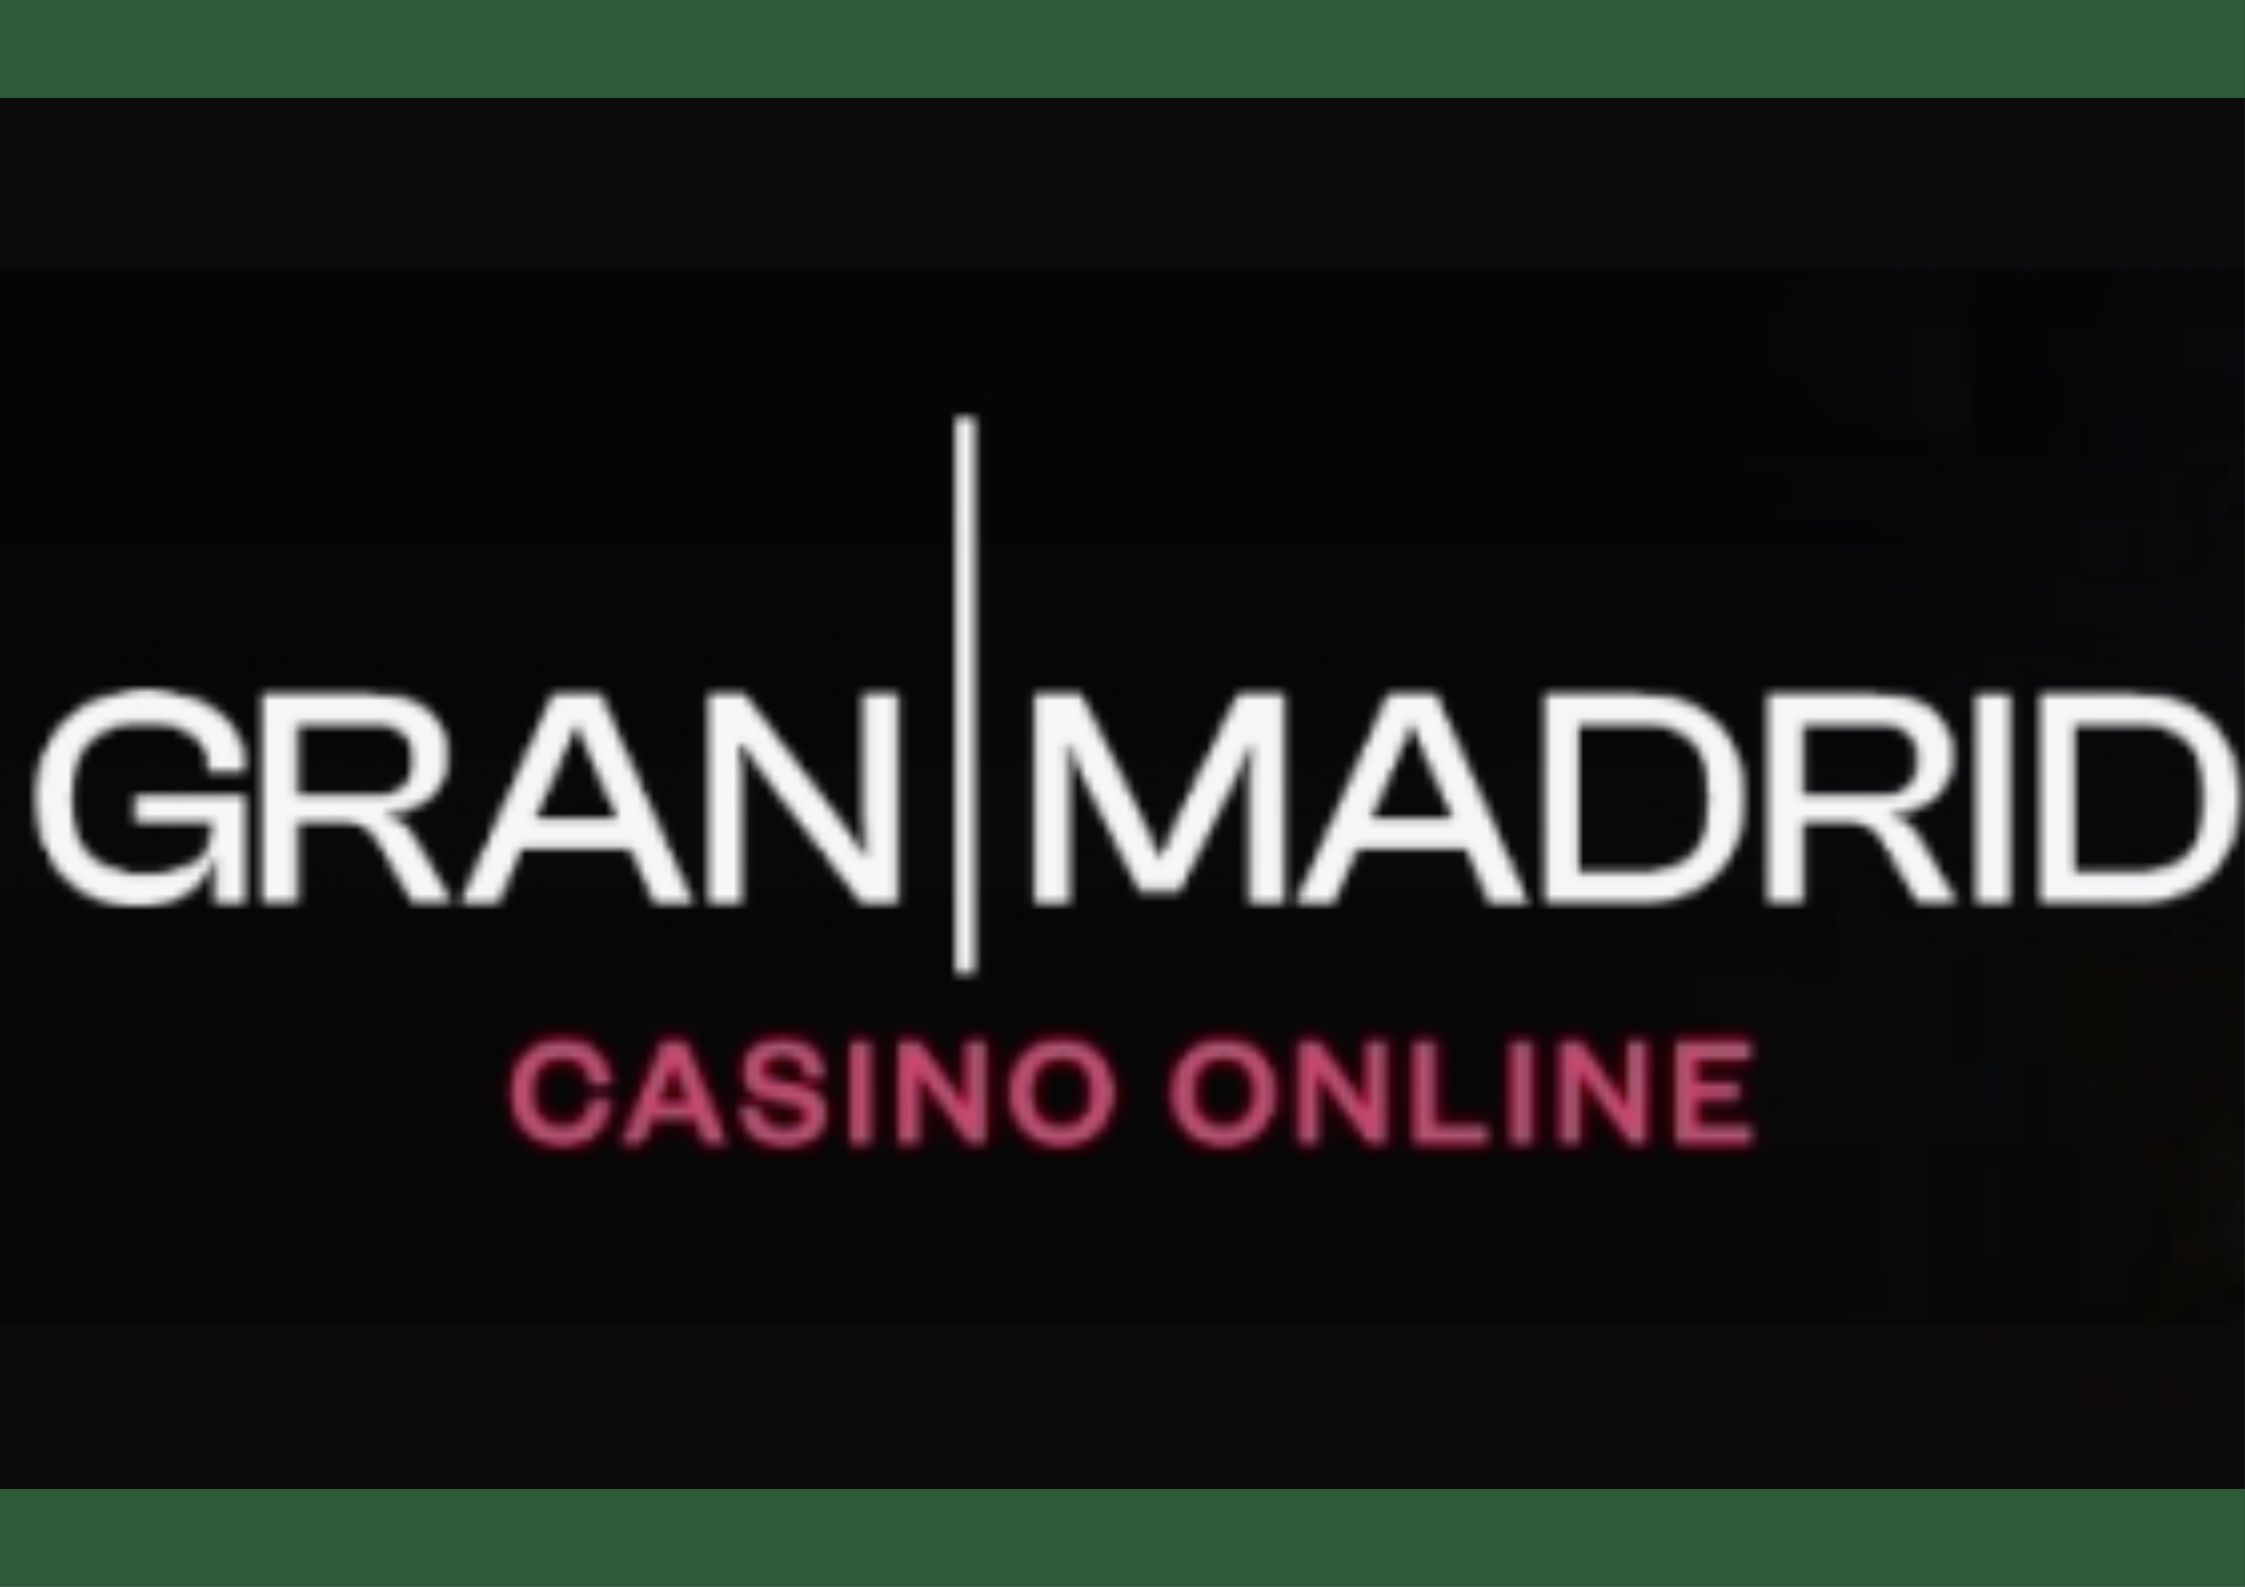 Casino Grand Madrid revise